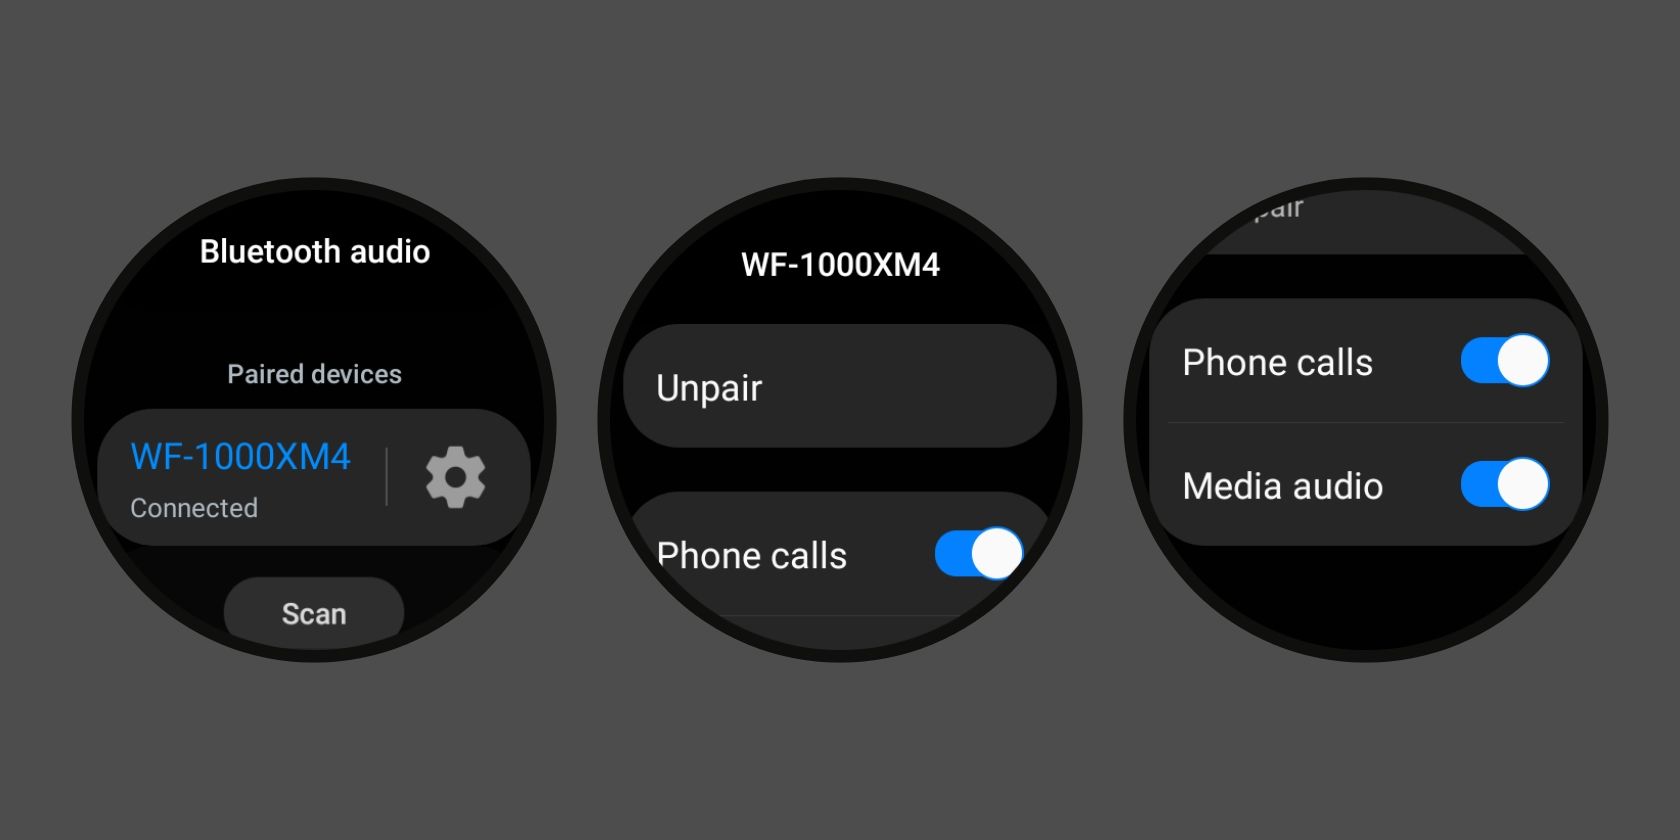 bluetooth device settings sub-menu in Wear OS 3 on Samsung Galaxy Watch 4